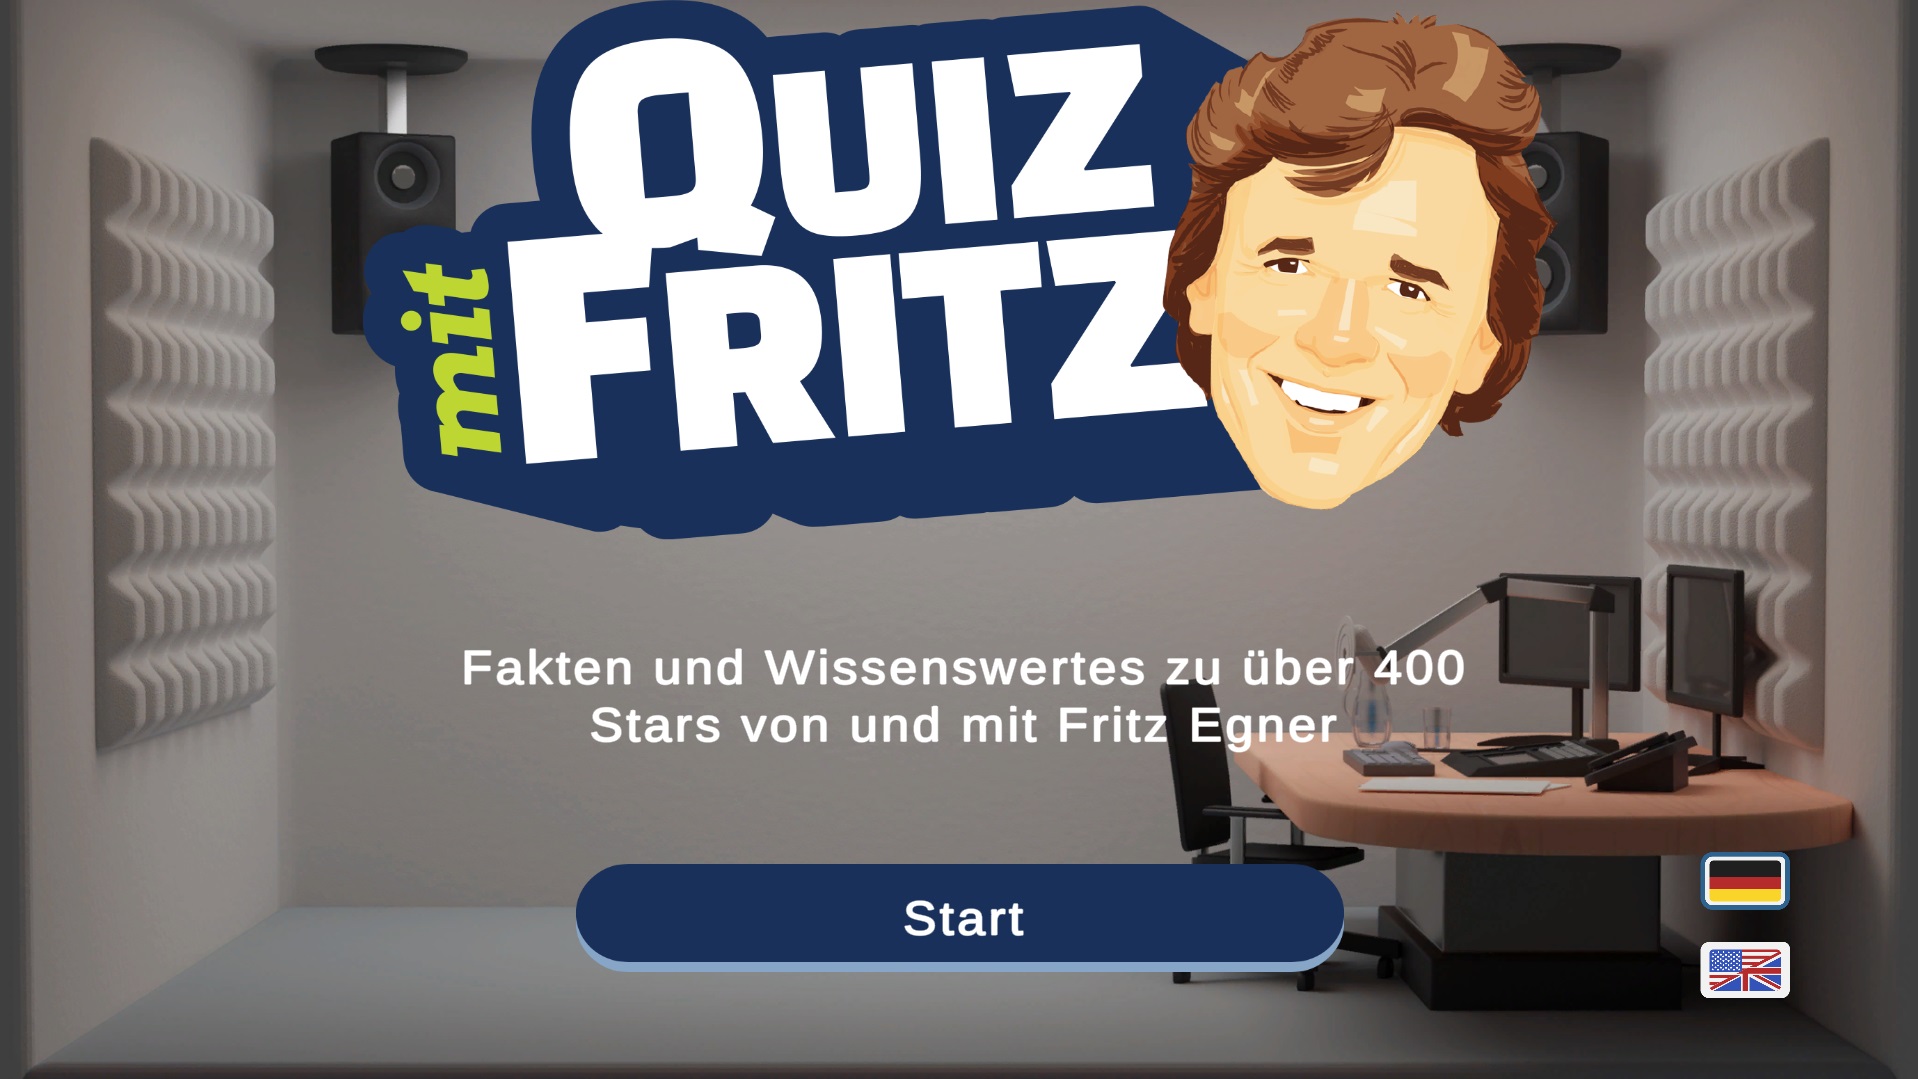 Quiz mit Fritz: Videogame für Musik-Fans angekündigt